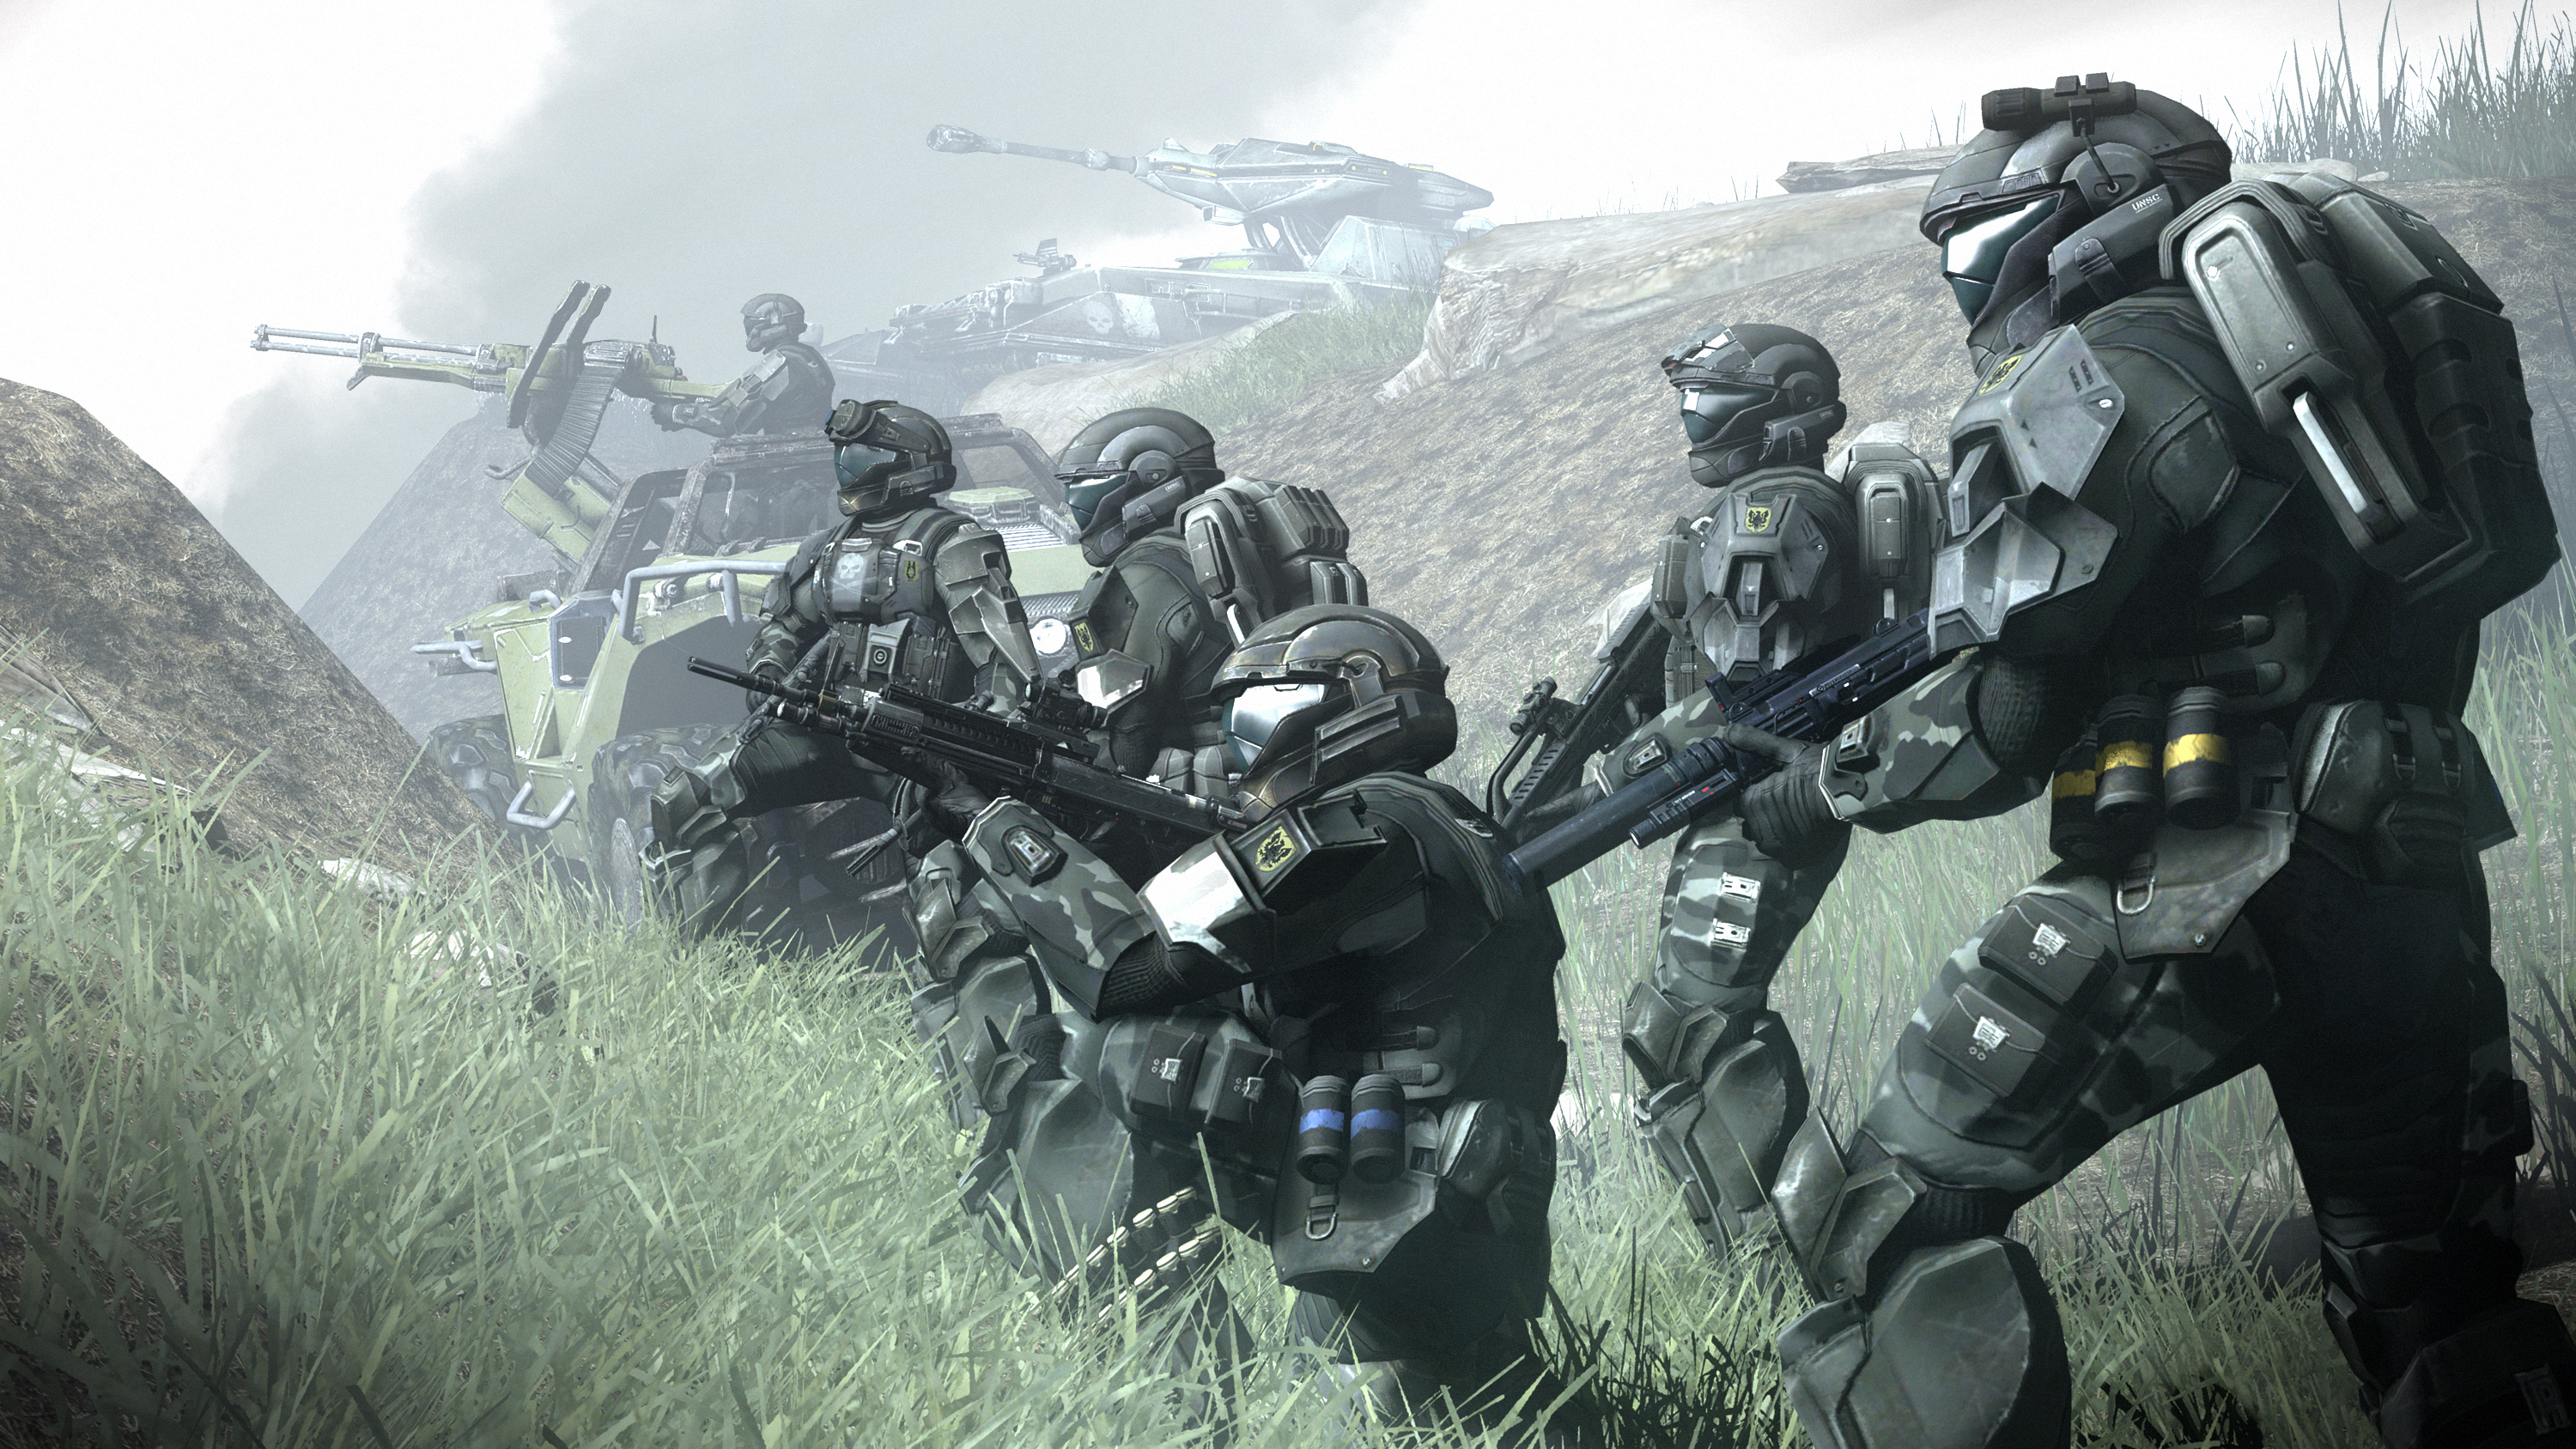 Video Games Halo Futuristic Armor ODST Submachine Gun Warthog Scorpion Halo War Soldier UNSC Digital 3000x1688